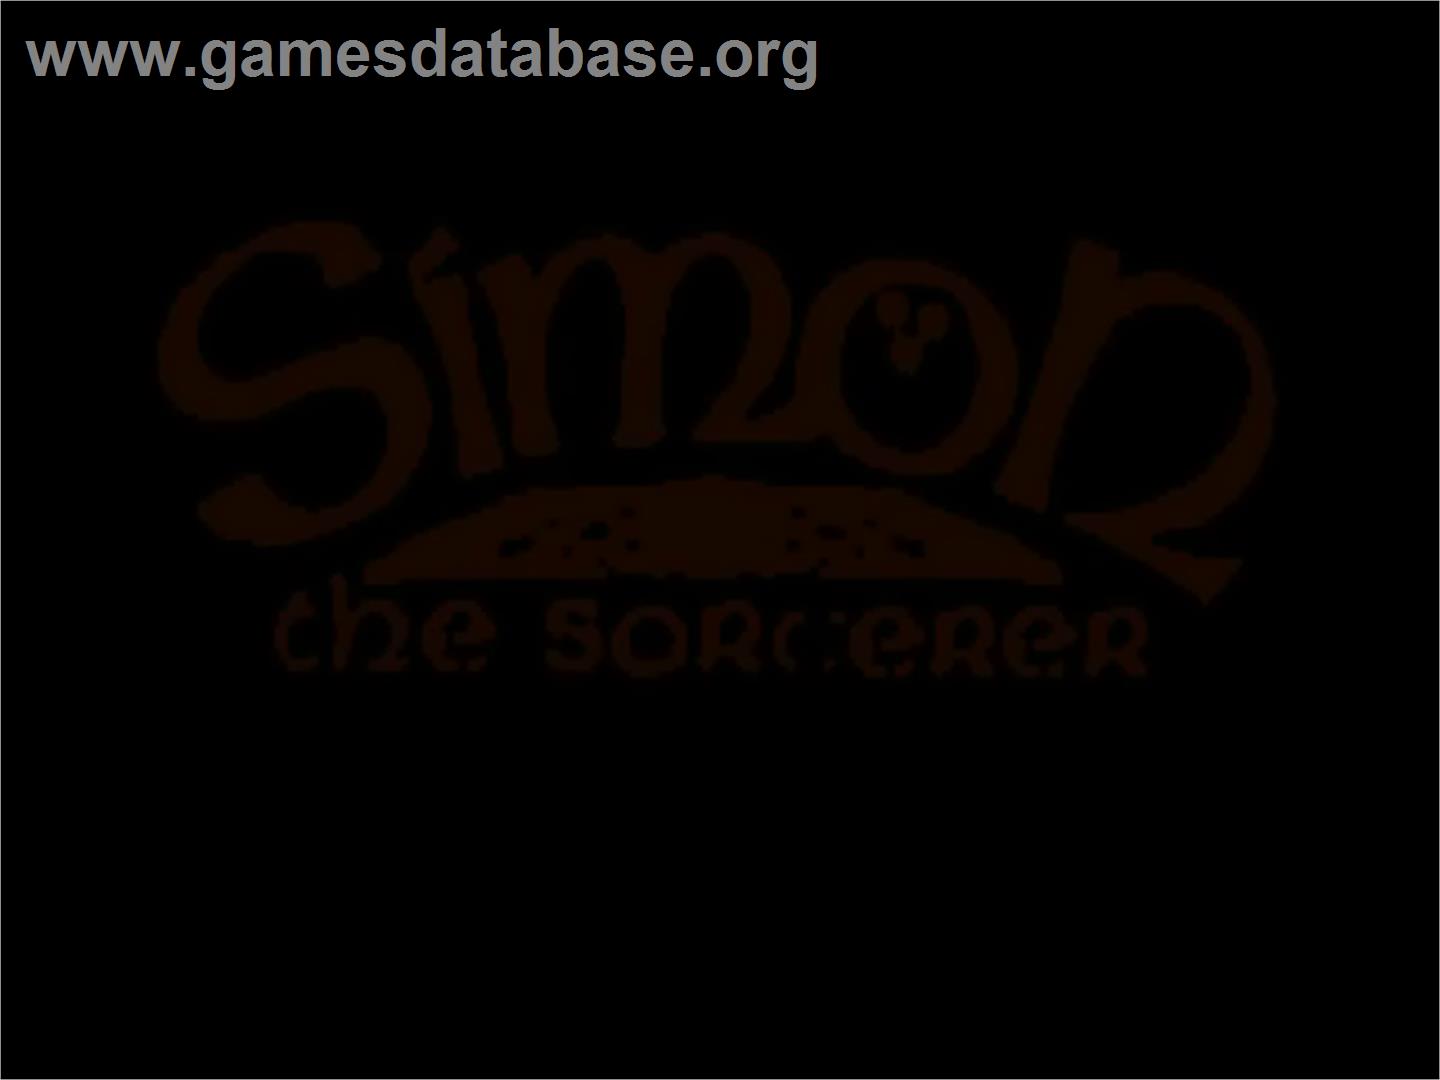 Simon the Sorcerer - Commodore Amiga CD32 - Artwork - Title Screen